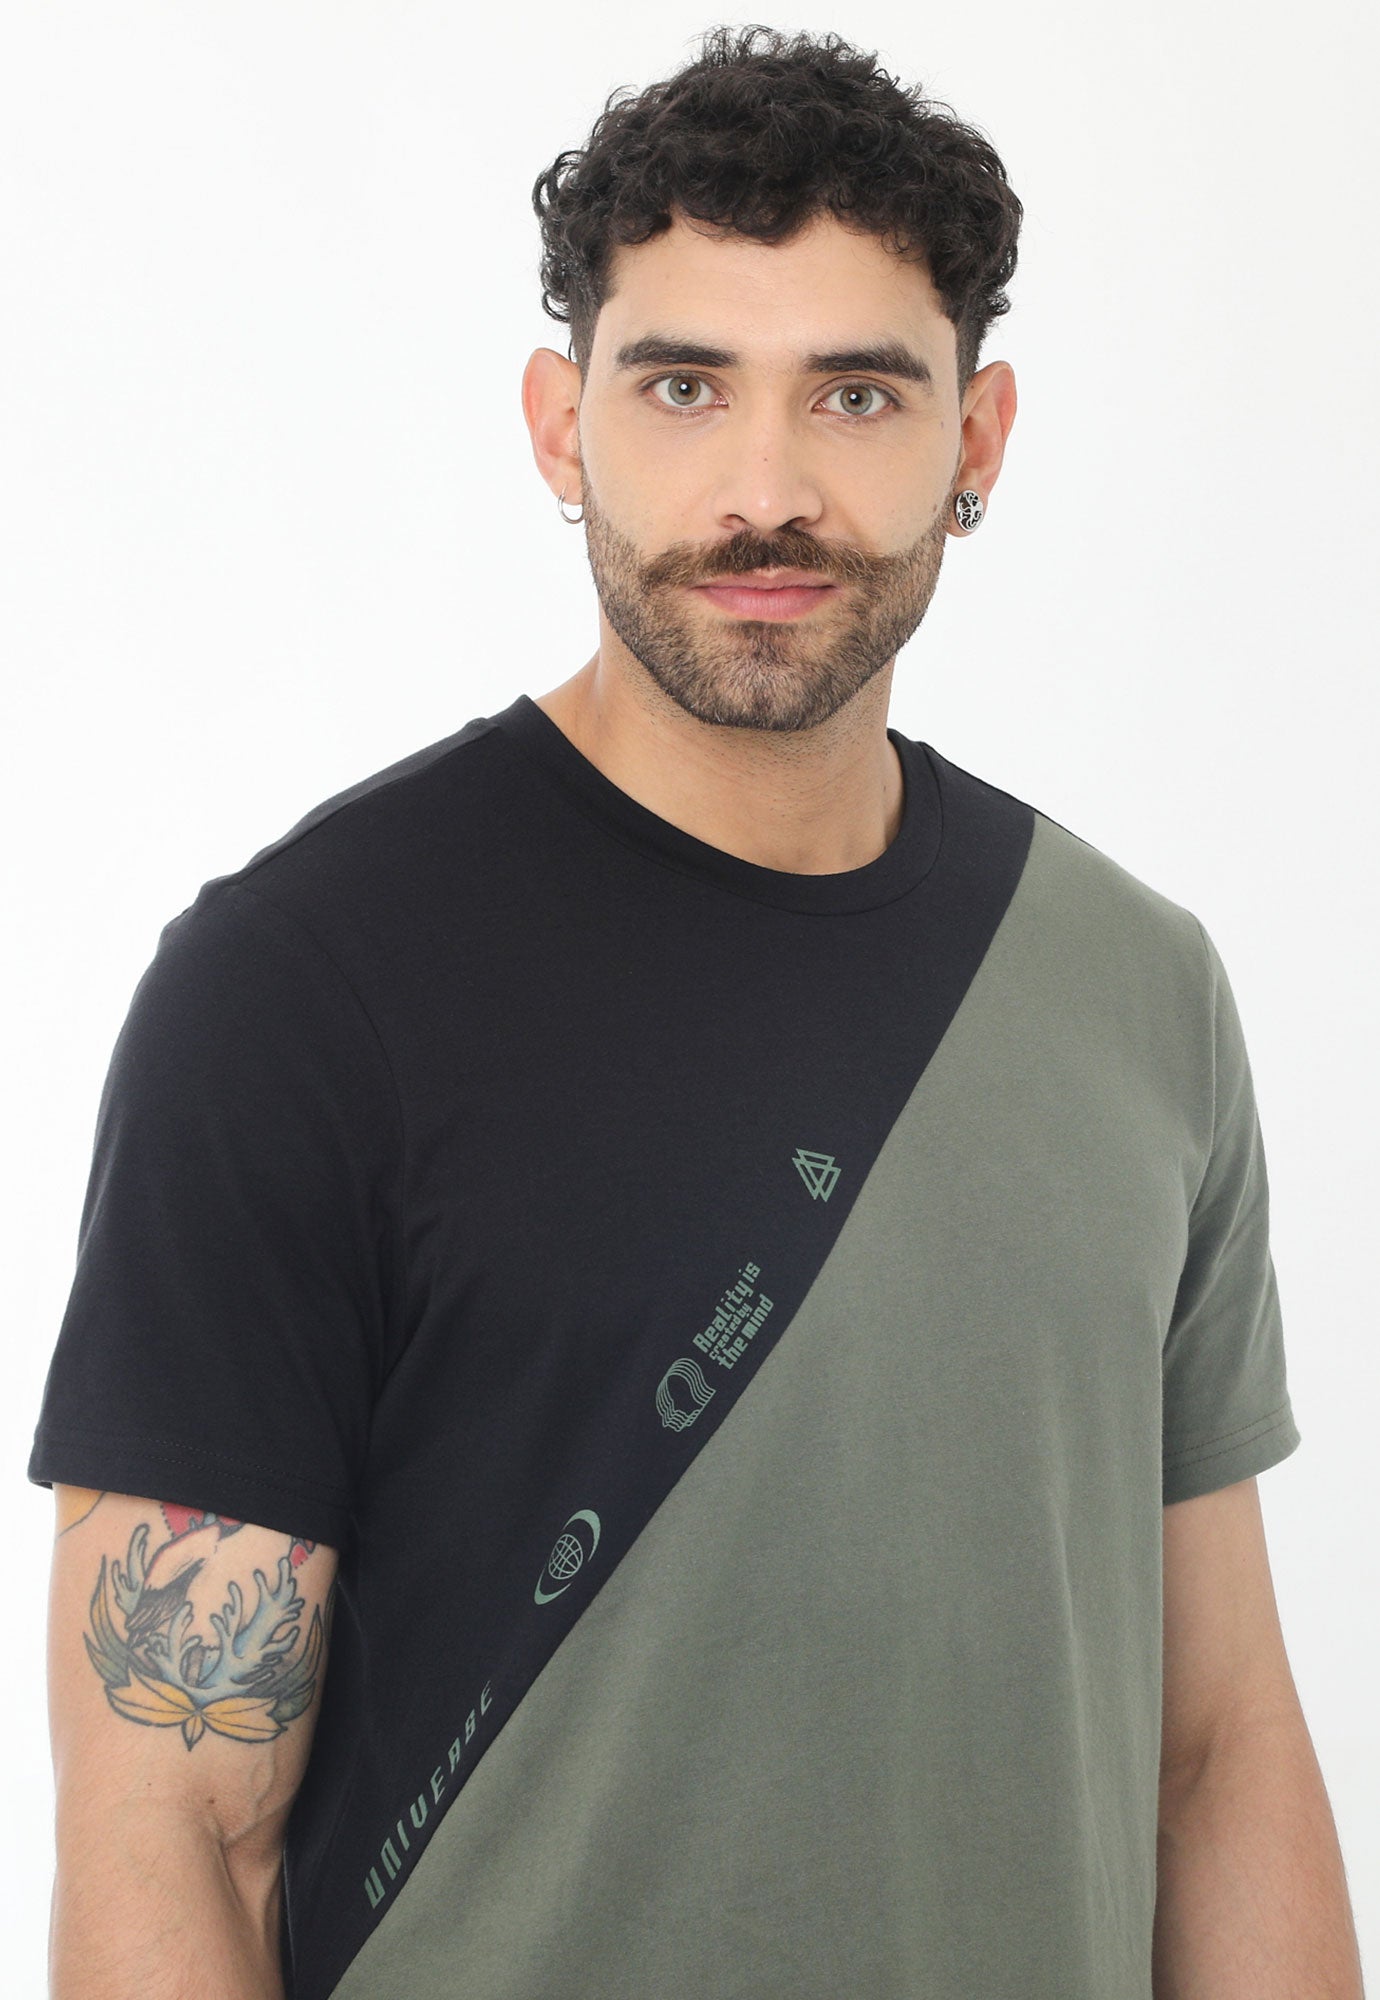 Camiseta negra en bloques diagonales en contraste, cuello redondo y manga corta para hombre